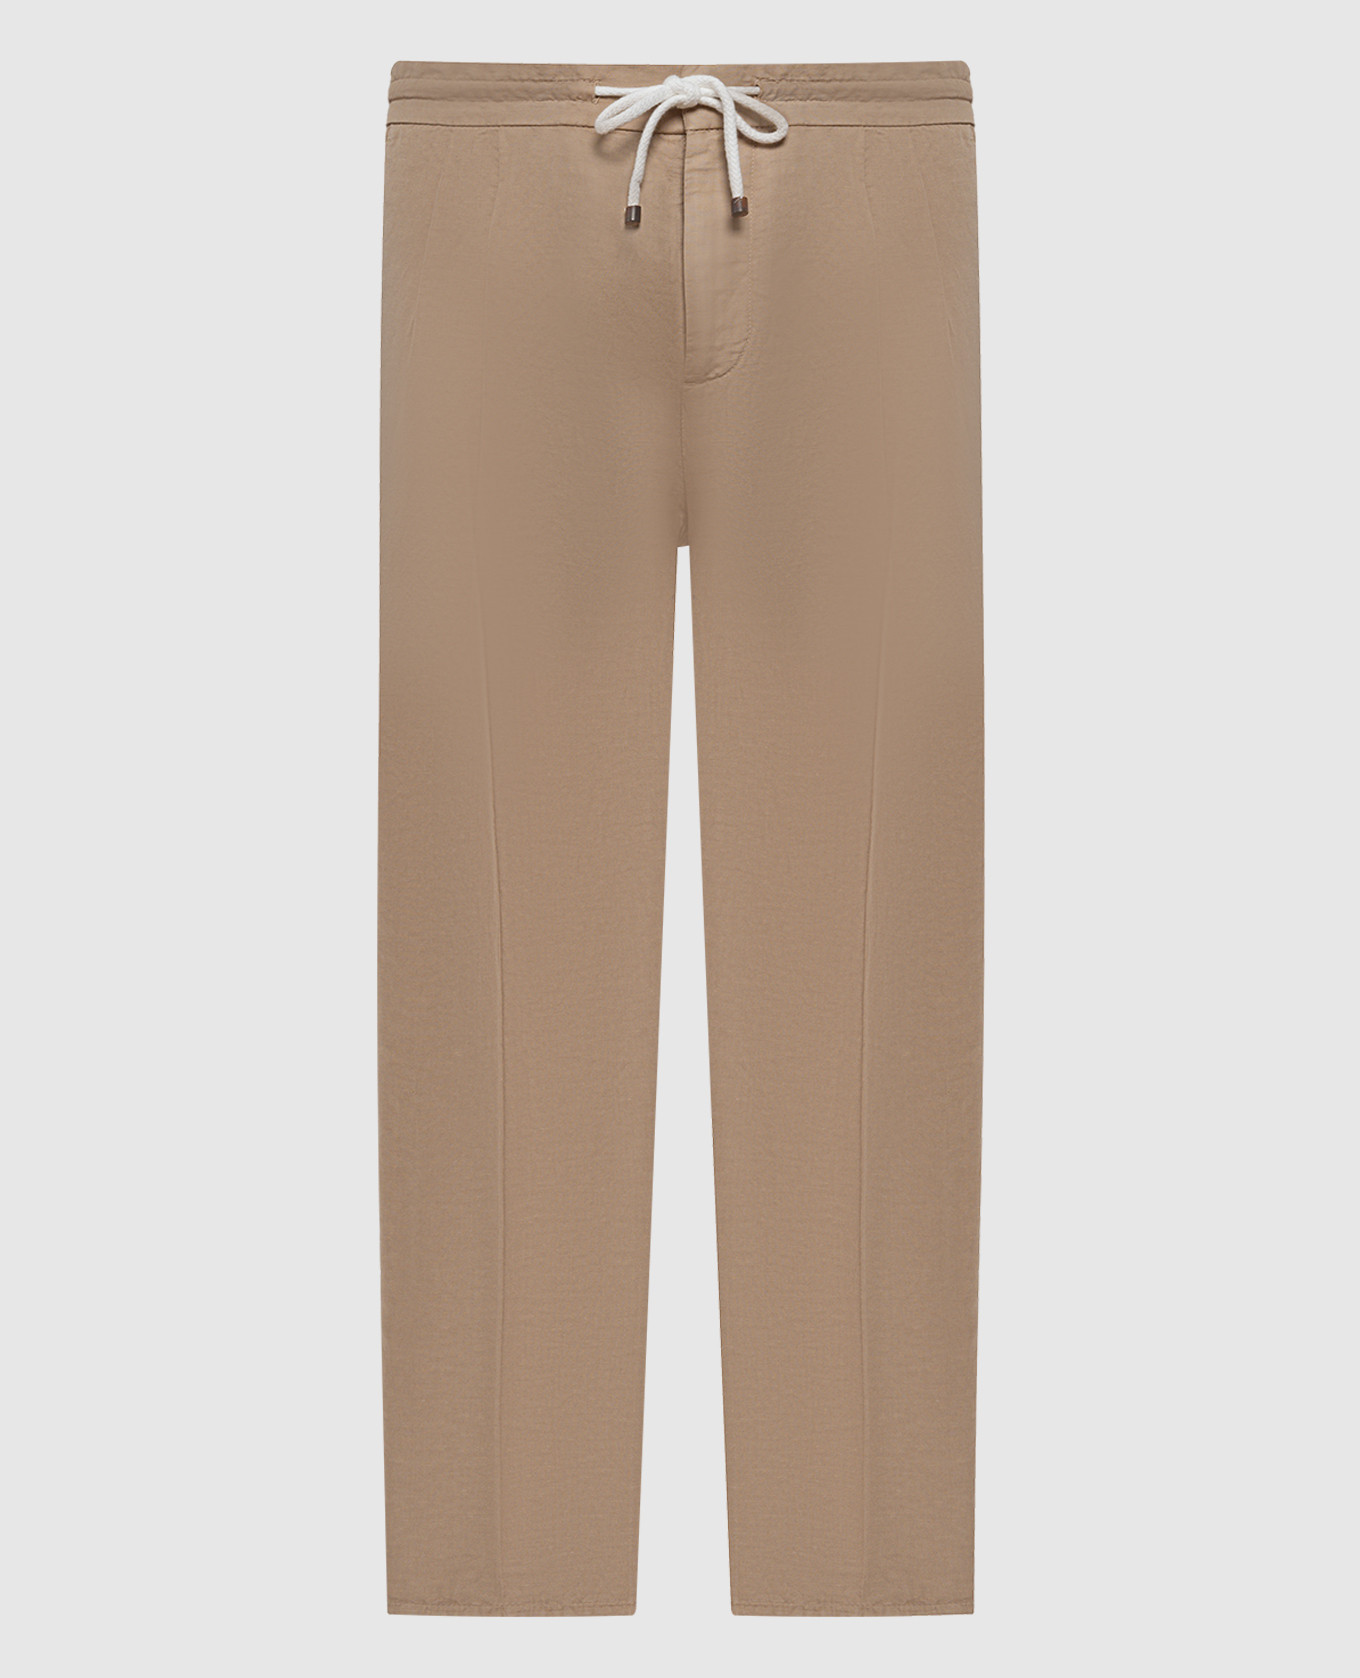 Beige pants with linen